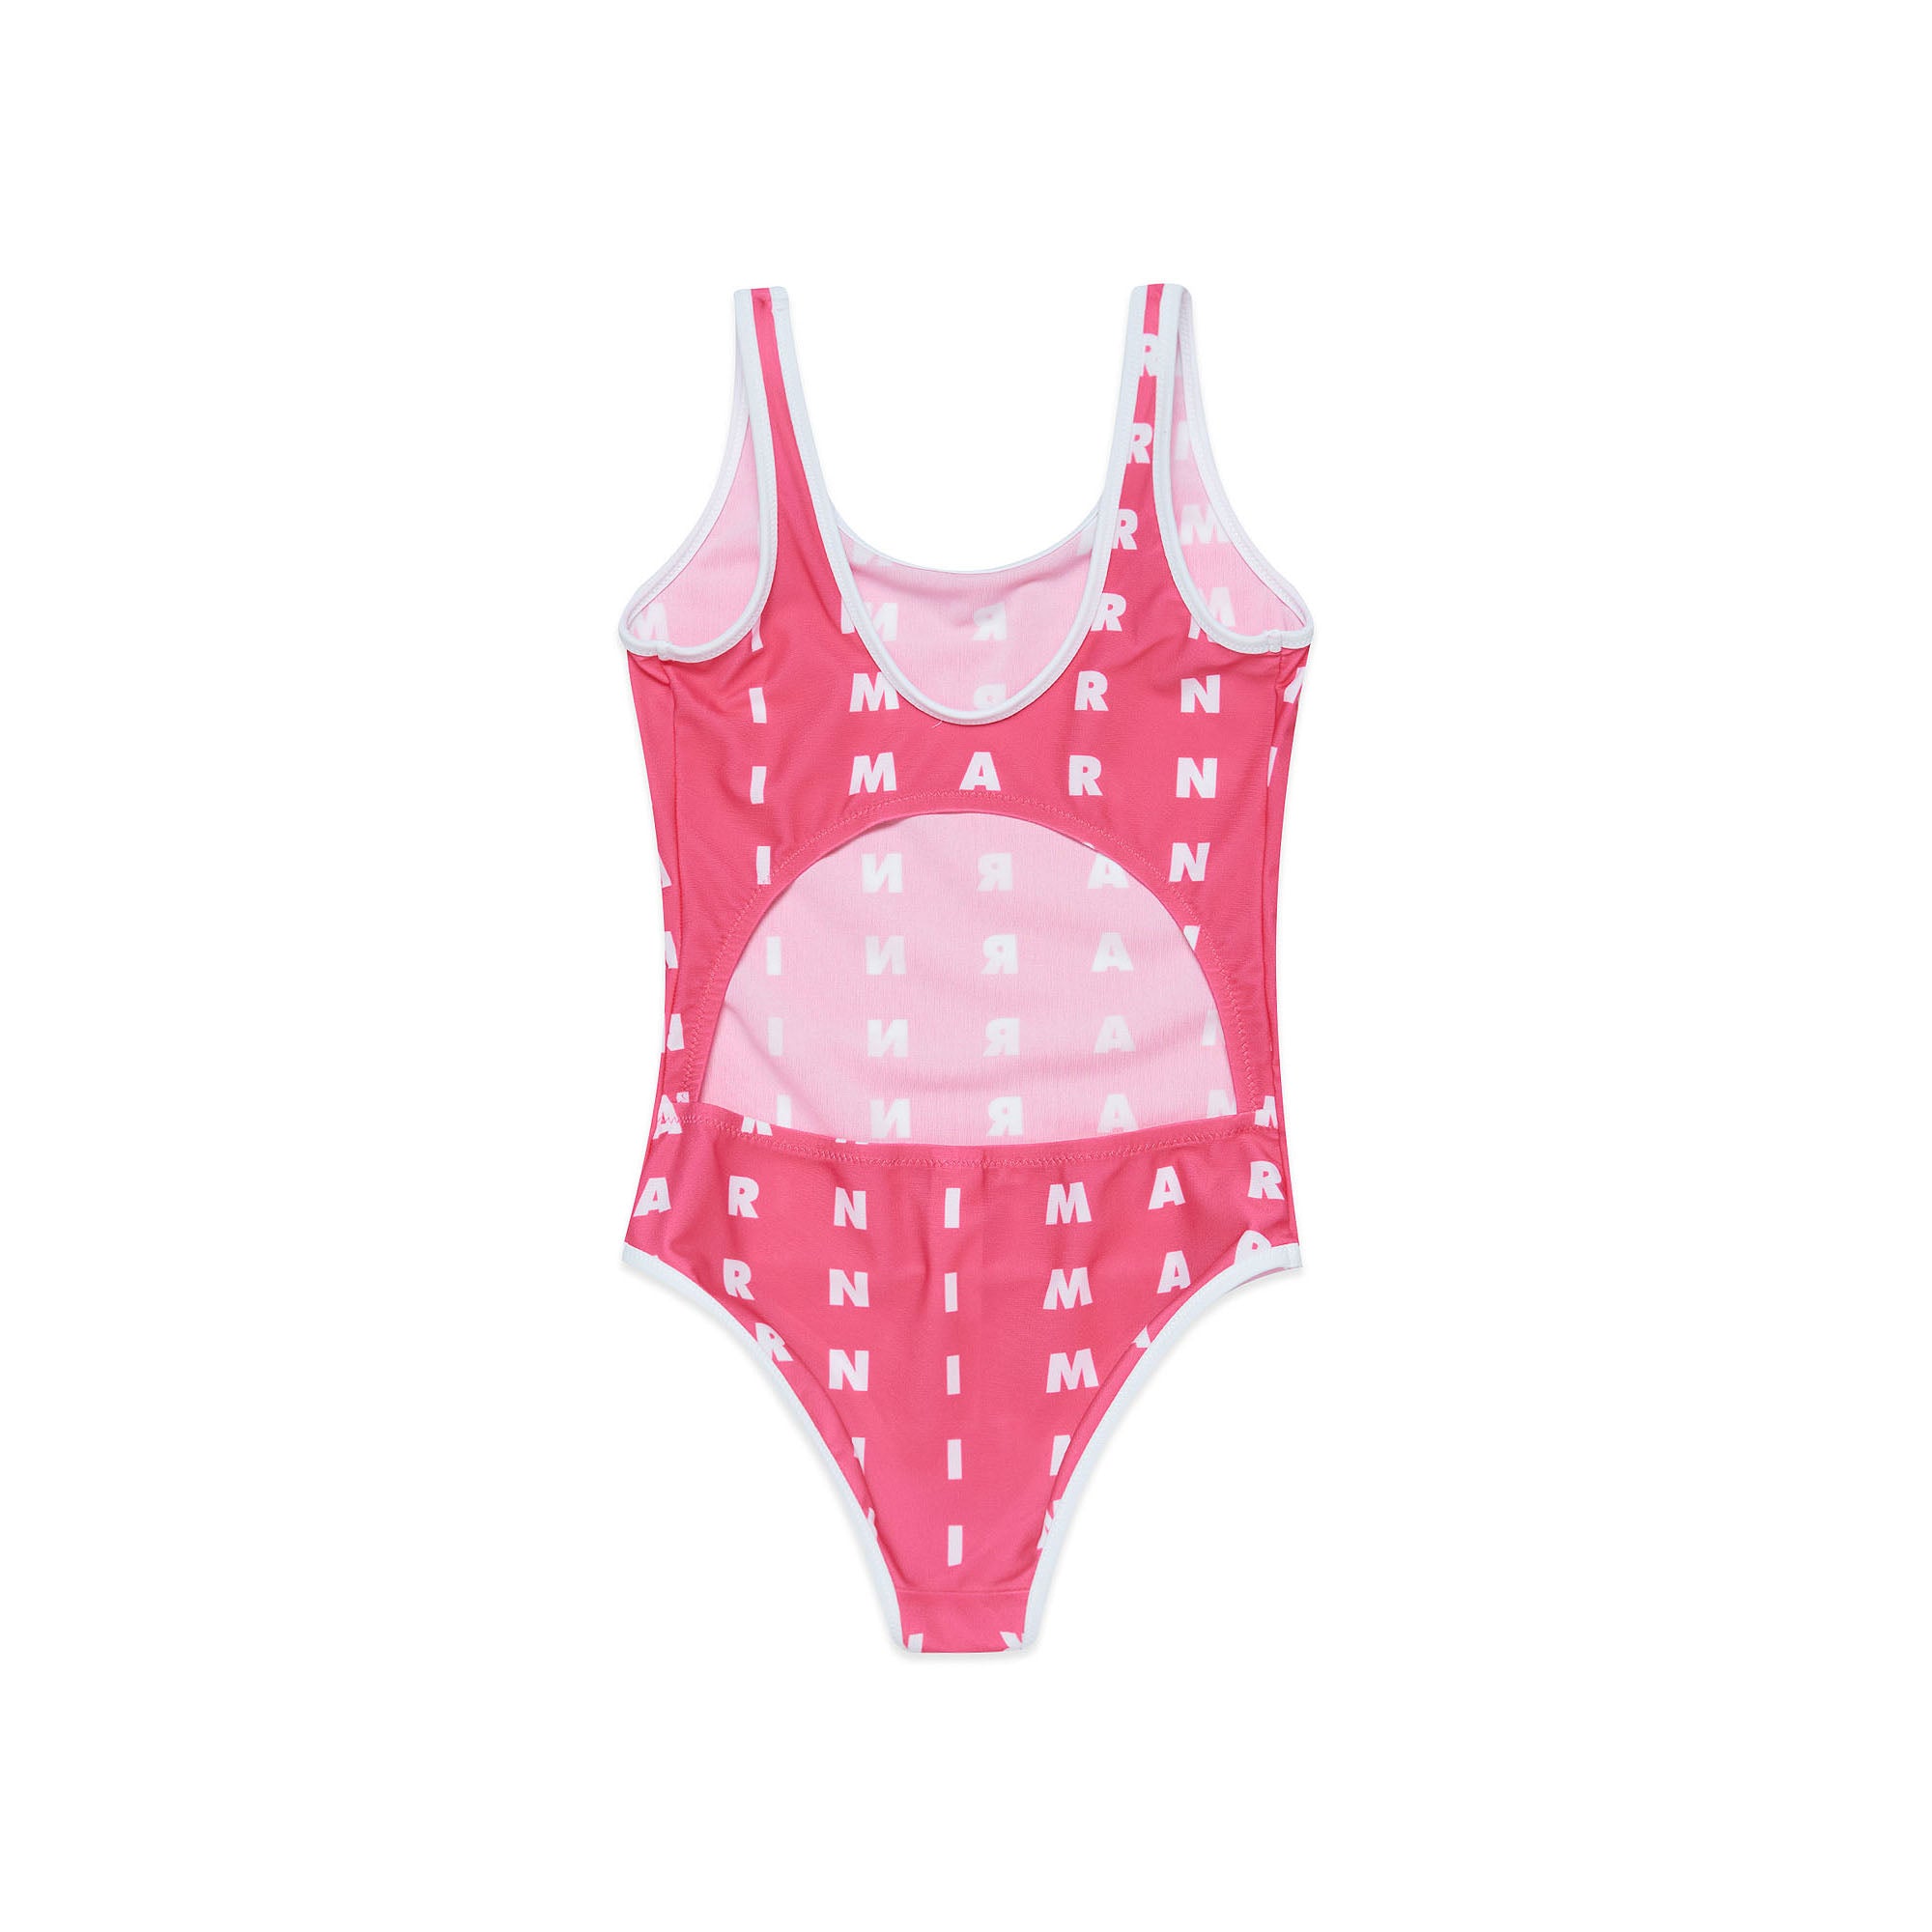 Girls Pink Logo Swimsuit